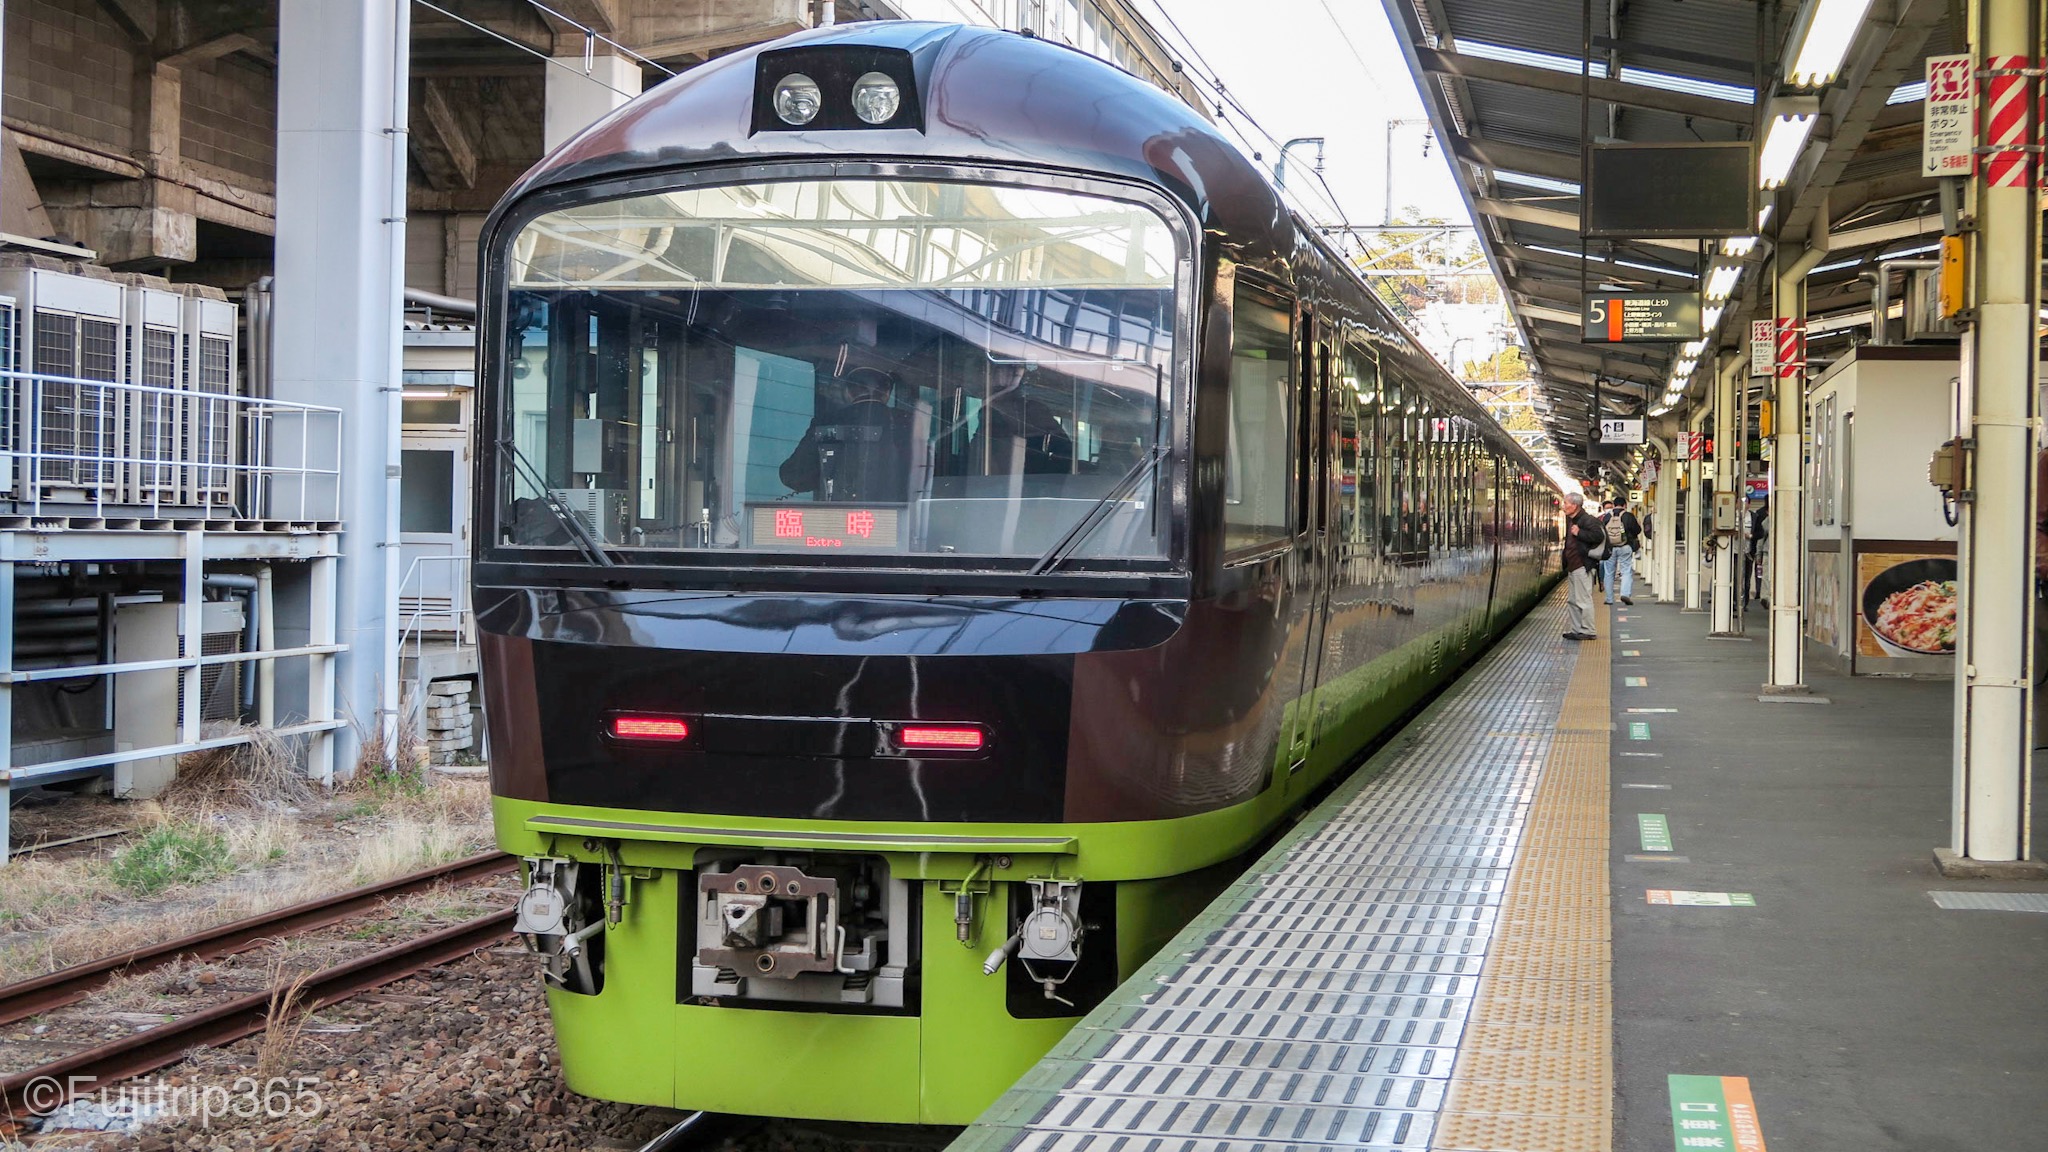 群馬の乗りトク列車 快速リゾートやまどり号 運転日 車両 停車駅 料金 Fuji Trip 365